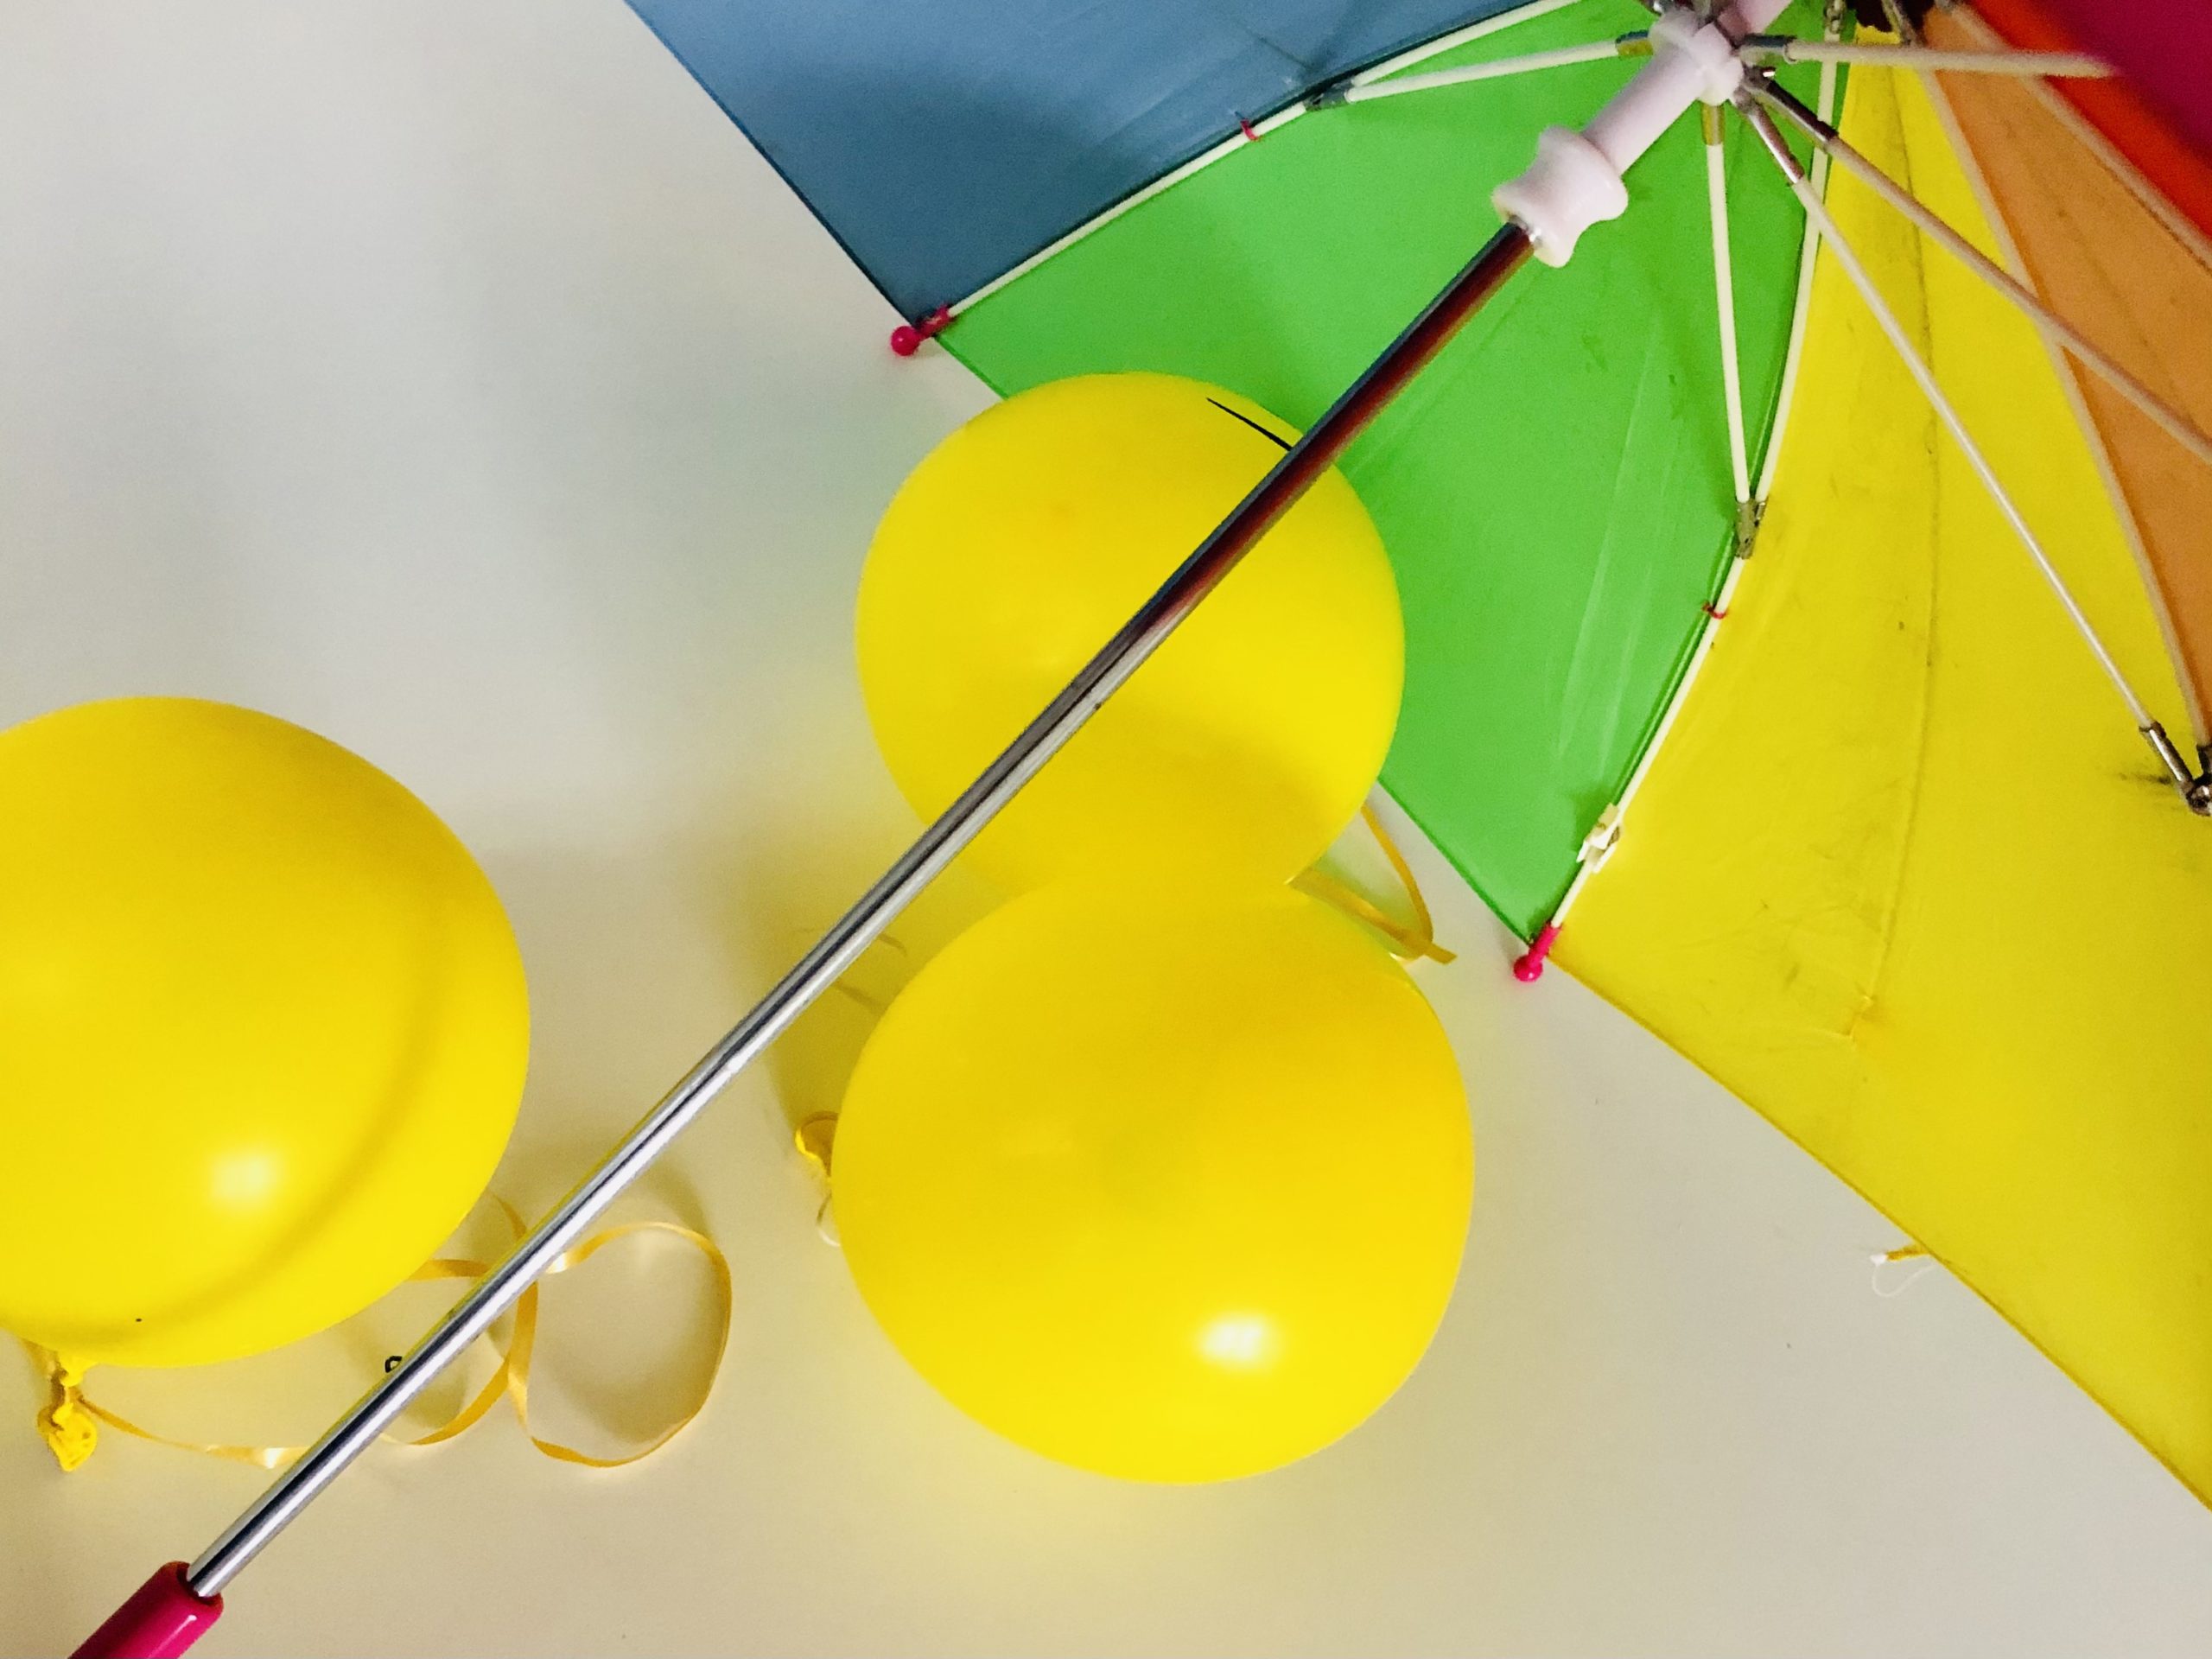 Bild zum Schritt 3 für das Bastel- und DIY-Abenteuer für Kinder: 'Nun hängt ihr die Luftballons an die Stangen des Regenschirms....'